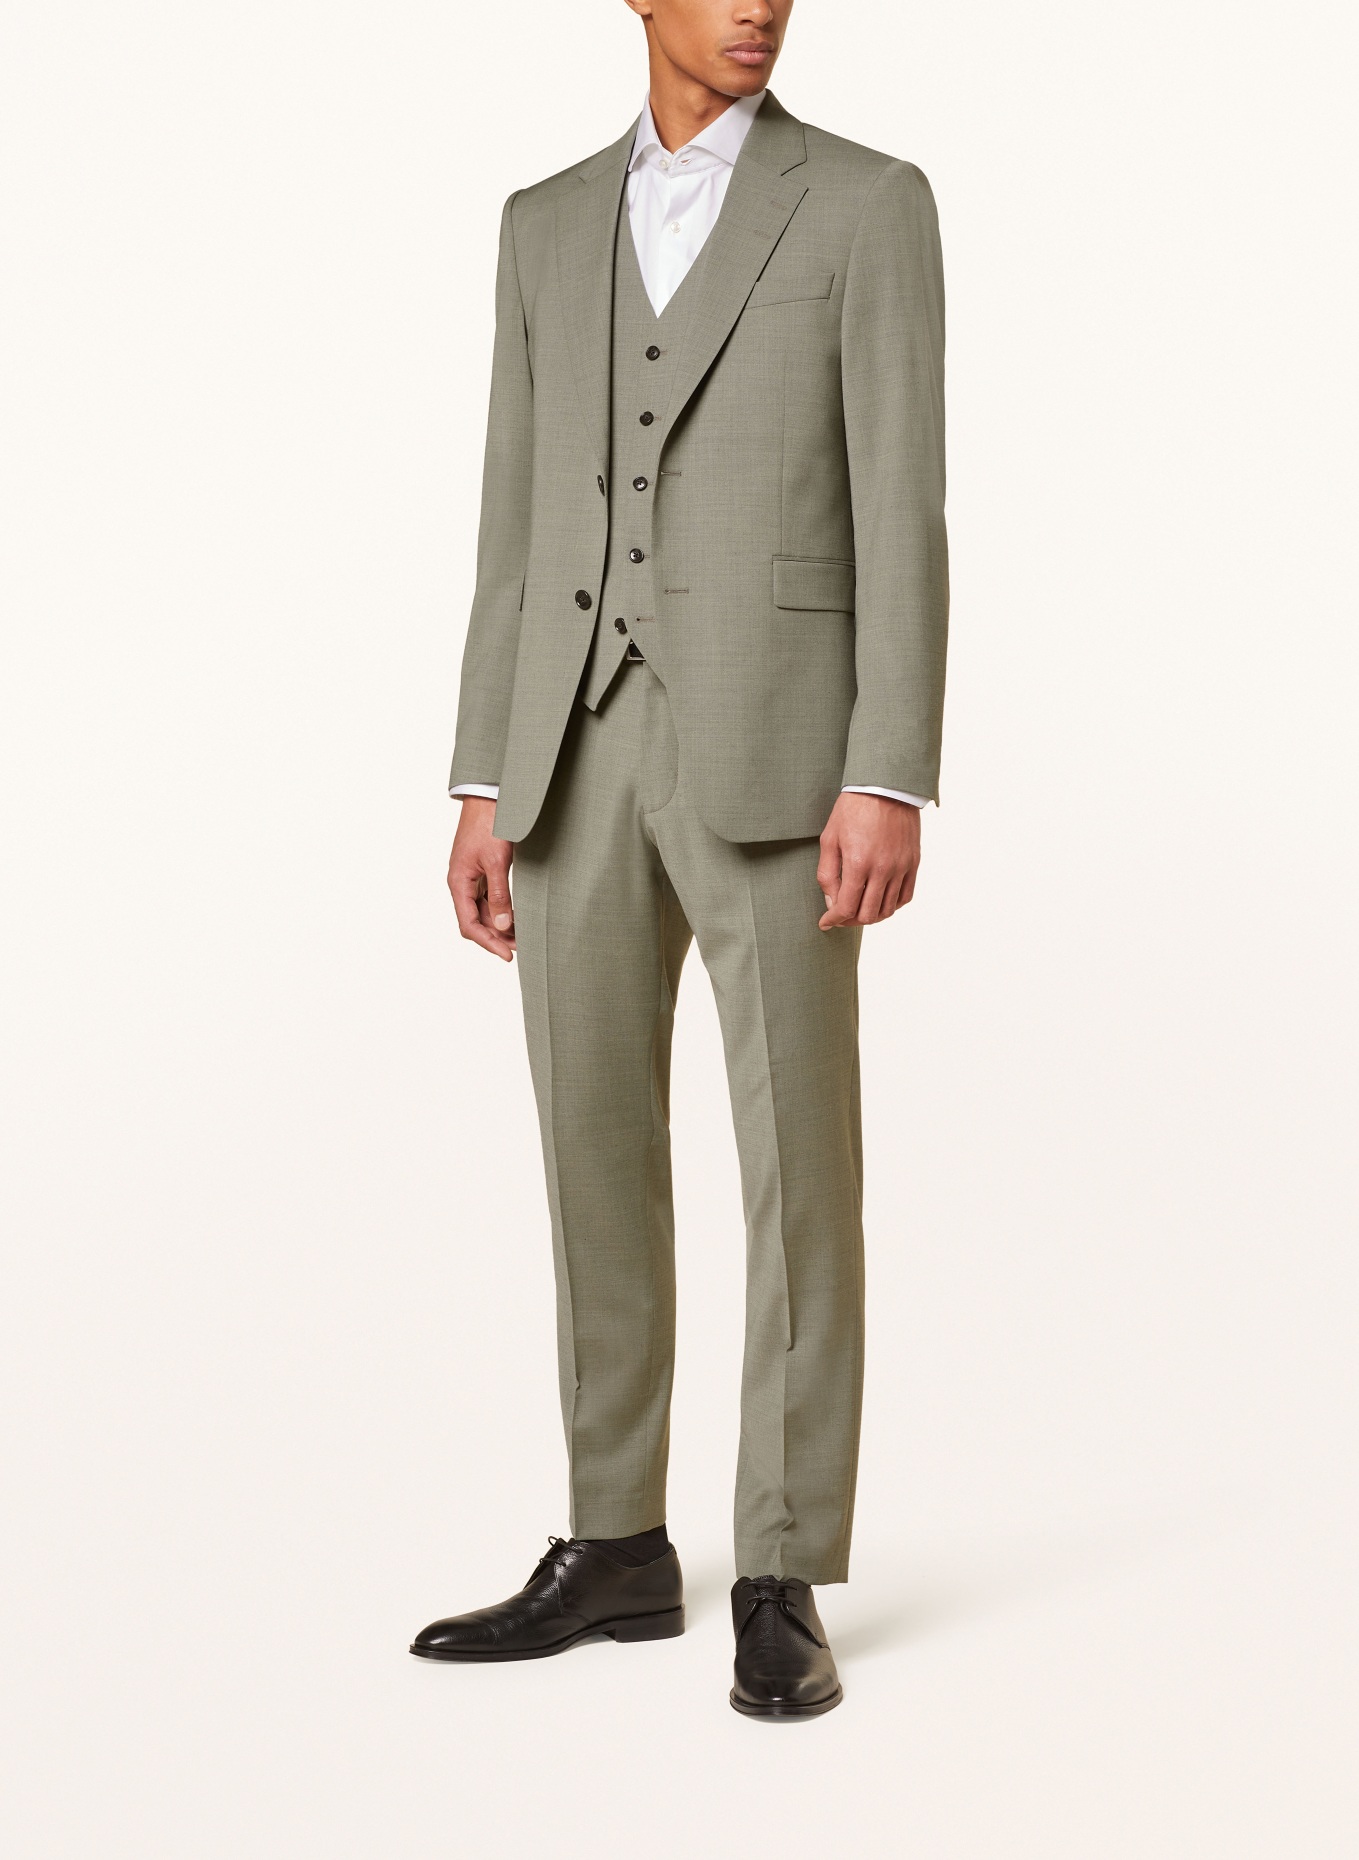 TIGER OF SWEDEN Suit jacket JUSTINS regular fit, Color: 07B Shadow (Image 2)